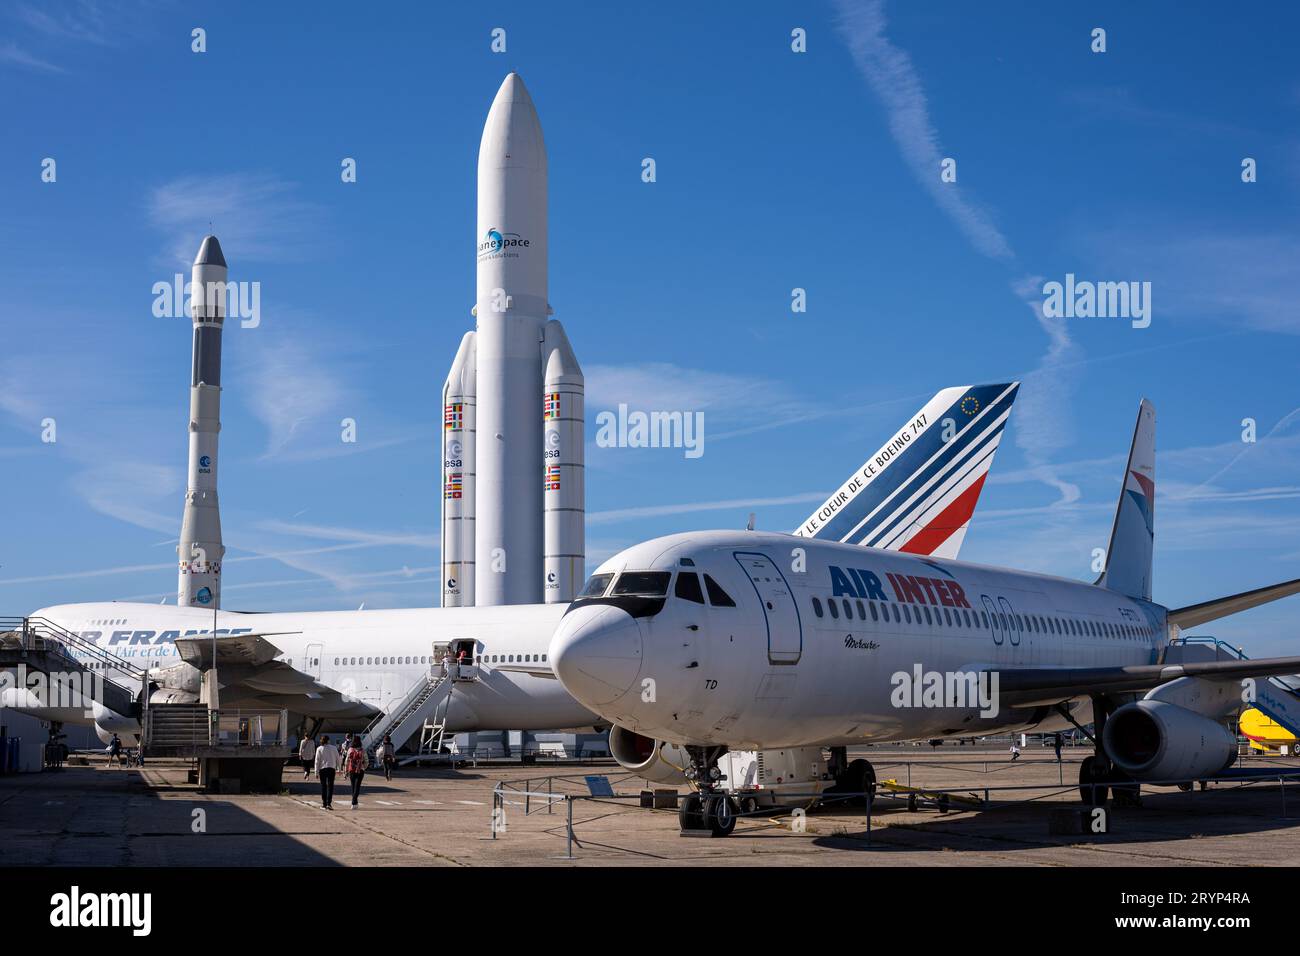 Flugzeuge und Modelle der europäischen Raketen Ariane 5 und Ariane 1 wurden auf dem Rollfeld des französischen Luft- und Raumfahrtmuseums im Flughafen Le Bourget ausgestellt. Stockfoto